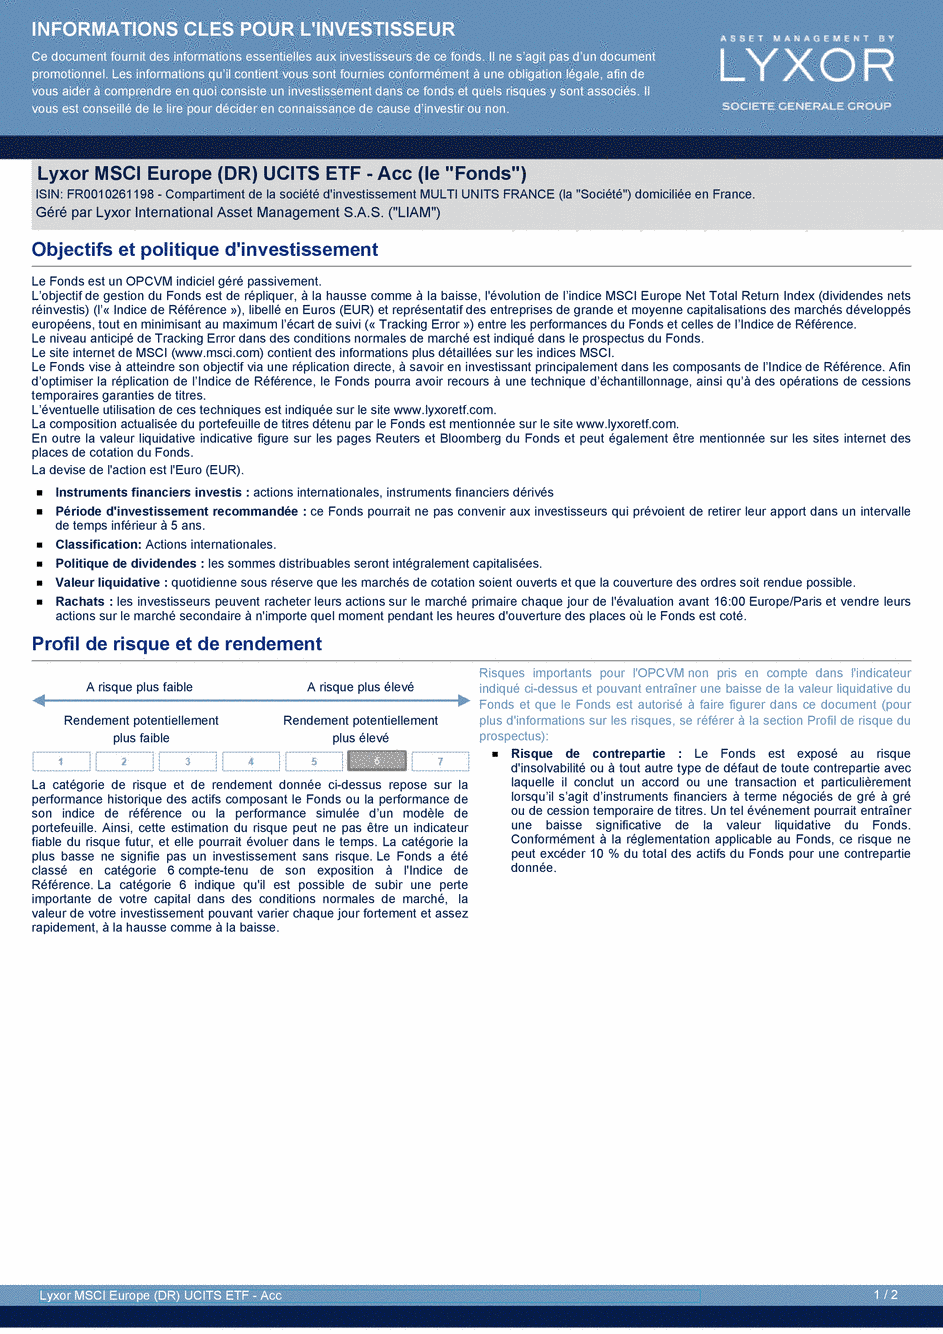 DICI Lyxor MSCI Europe (DR) UCITS ETF - Acc - 19/02/2021 - Français